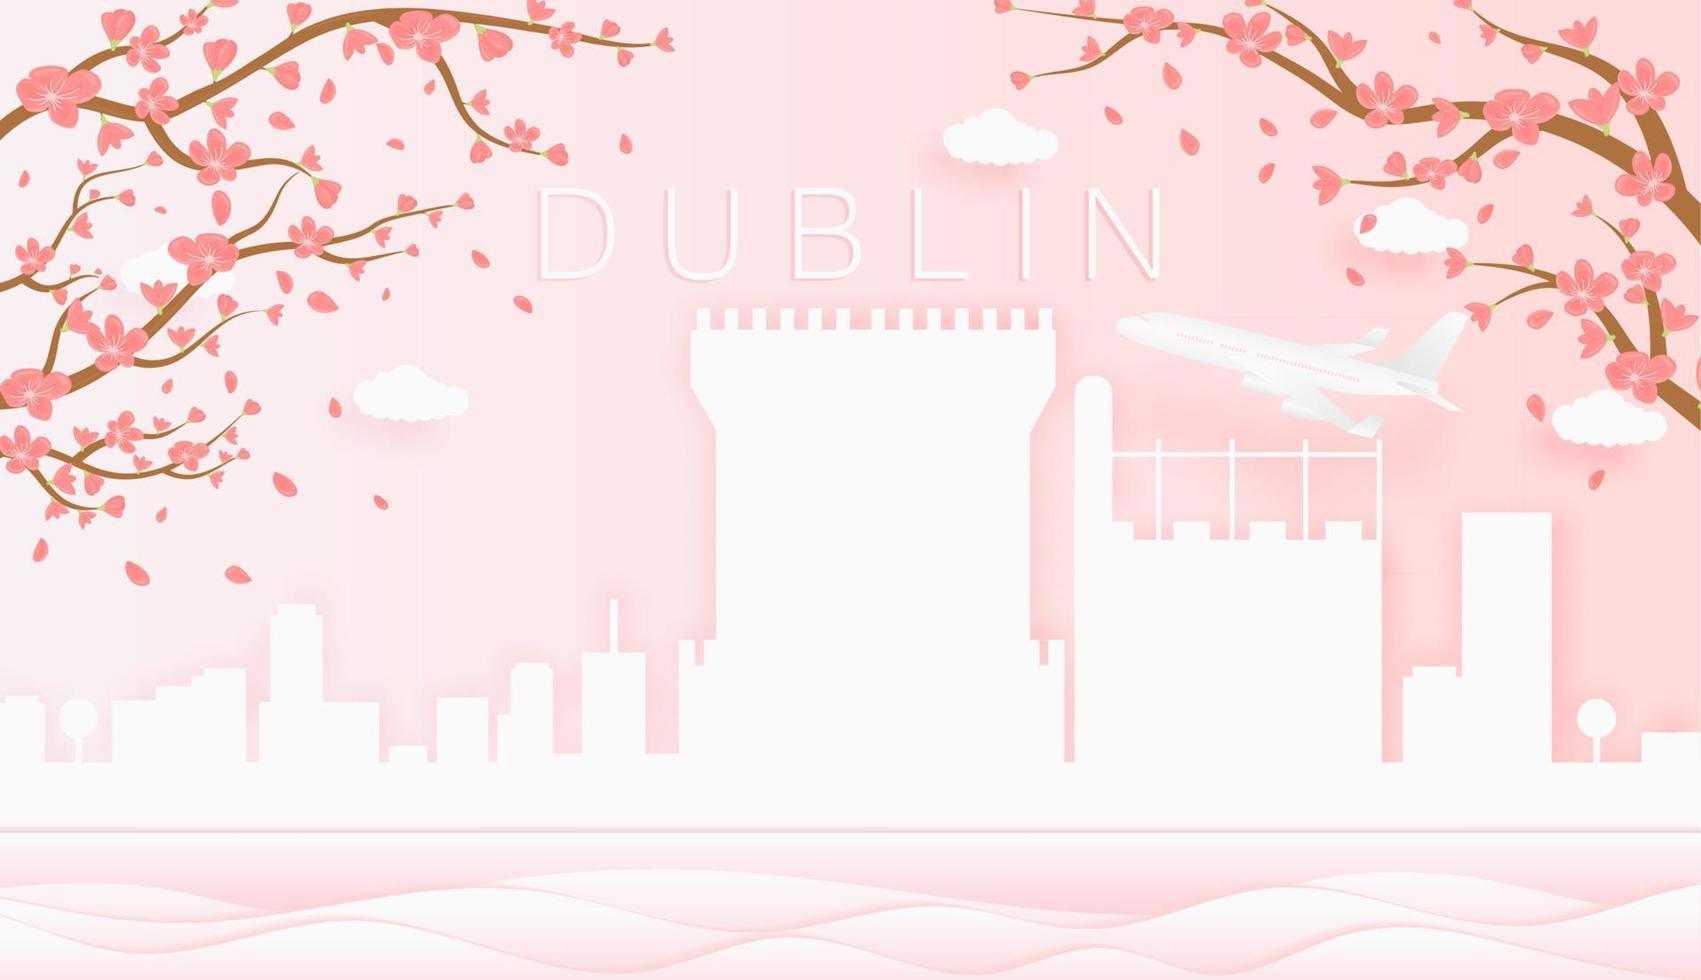 panorama viaje tarjeta postal, póster, excursión publicidad de mundo famoso puntos de referencia de Dublín, primavera temporada con floreciente flores en árbol vector